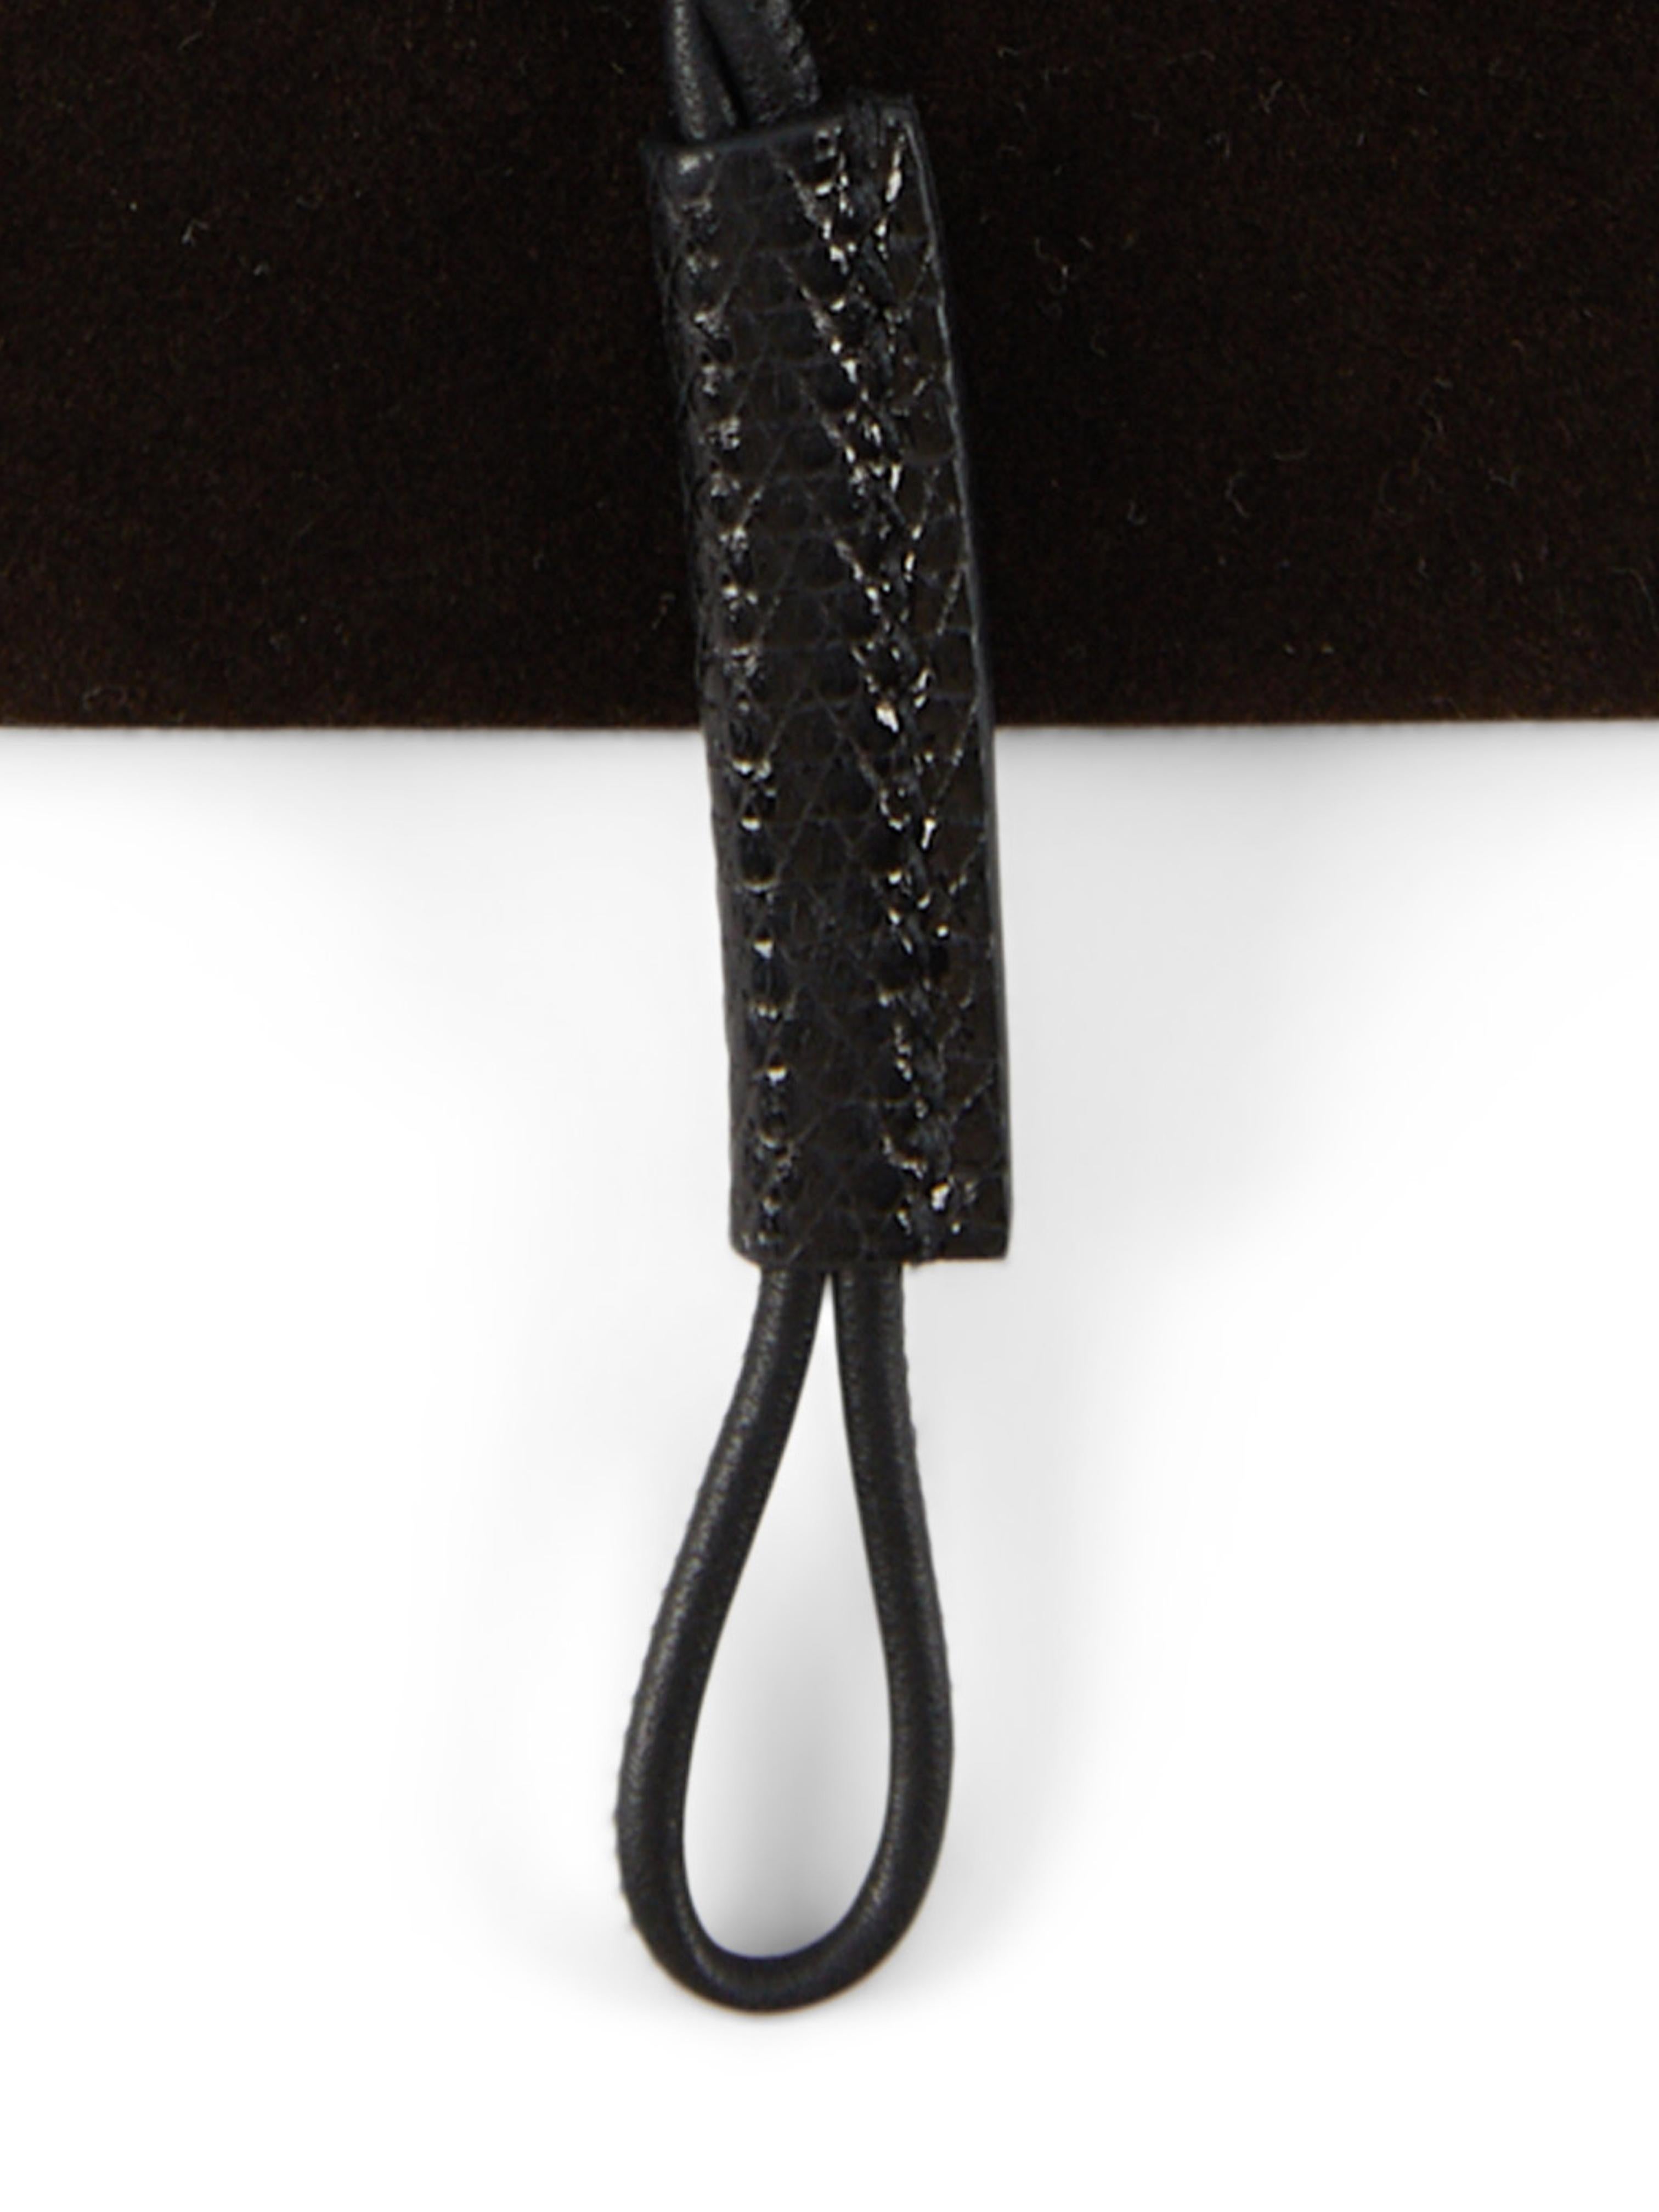 Hermès Curiosite Halskette ist schwarz

Eidechsenleder

Länge der Kette: 40,5 cm 

Begleitet von: Hermès Schachtel und Schleife